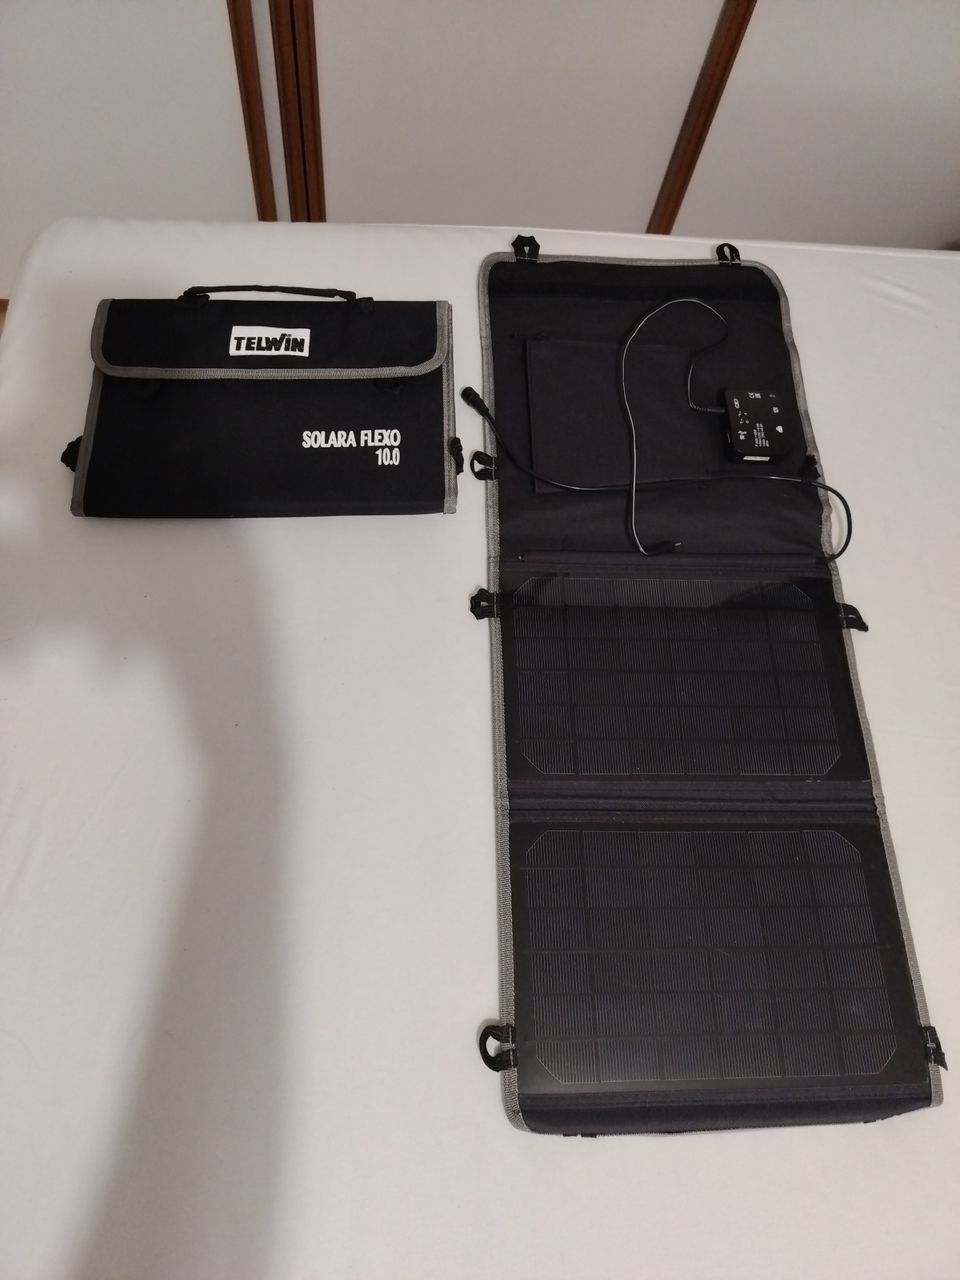 Aurinkopaneeli Telwin Solara Flexo 10W 2kpl 10€/kpl